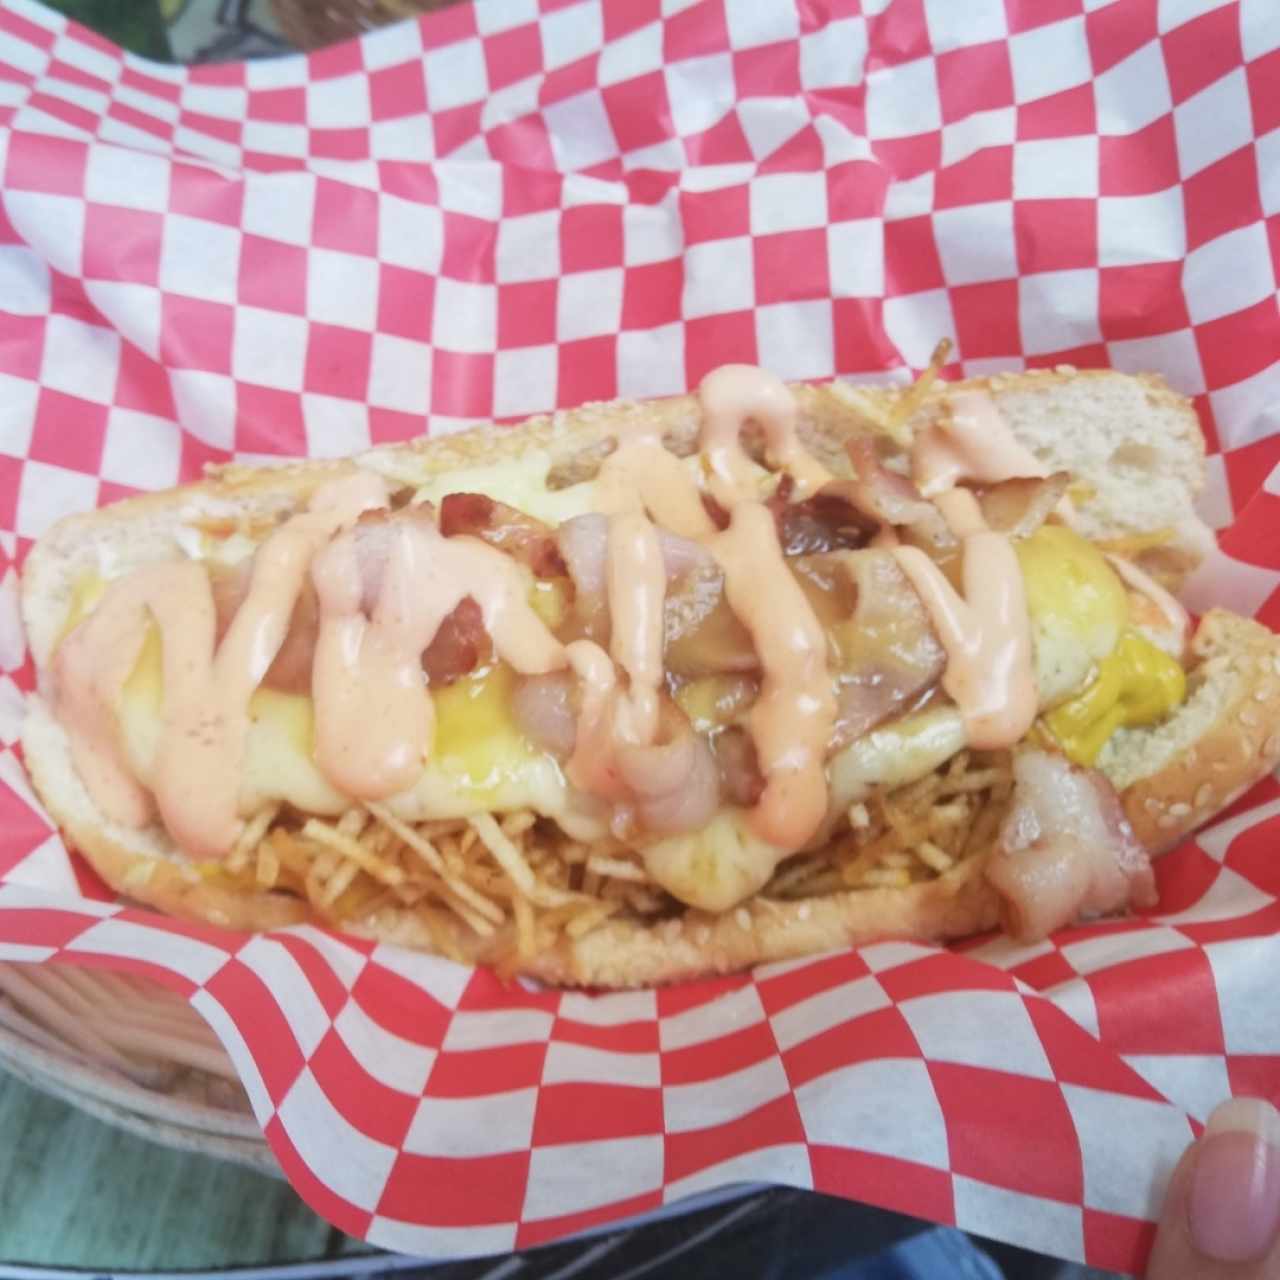 Hot dog especial sin cebolla 